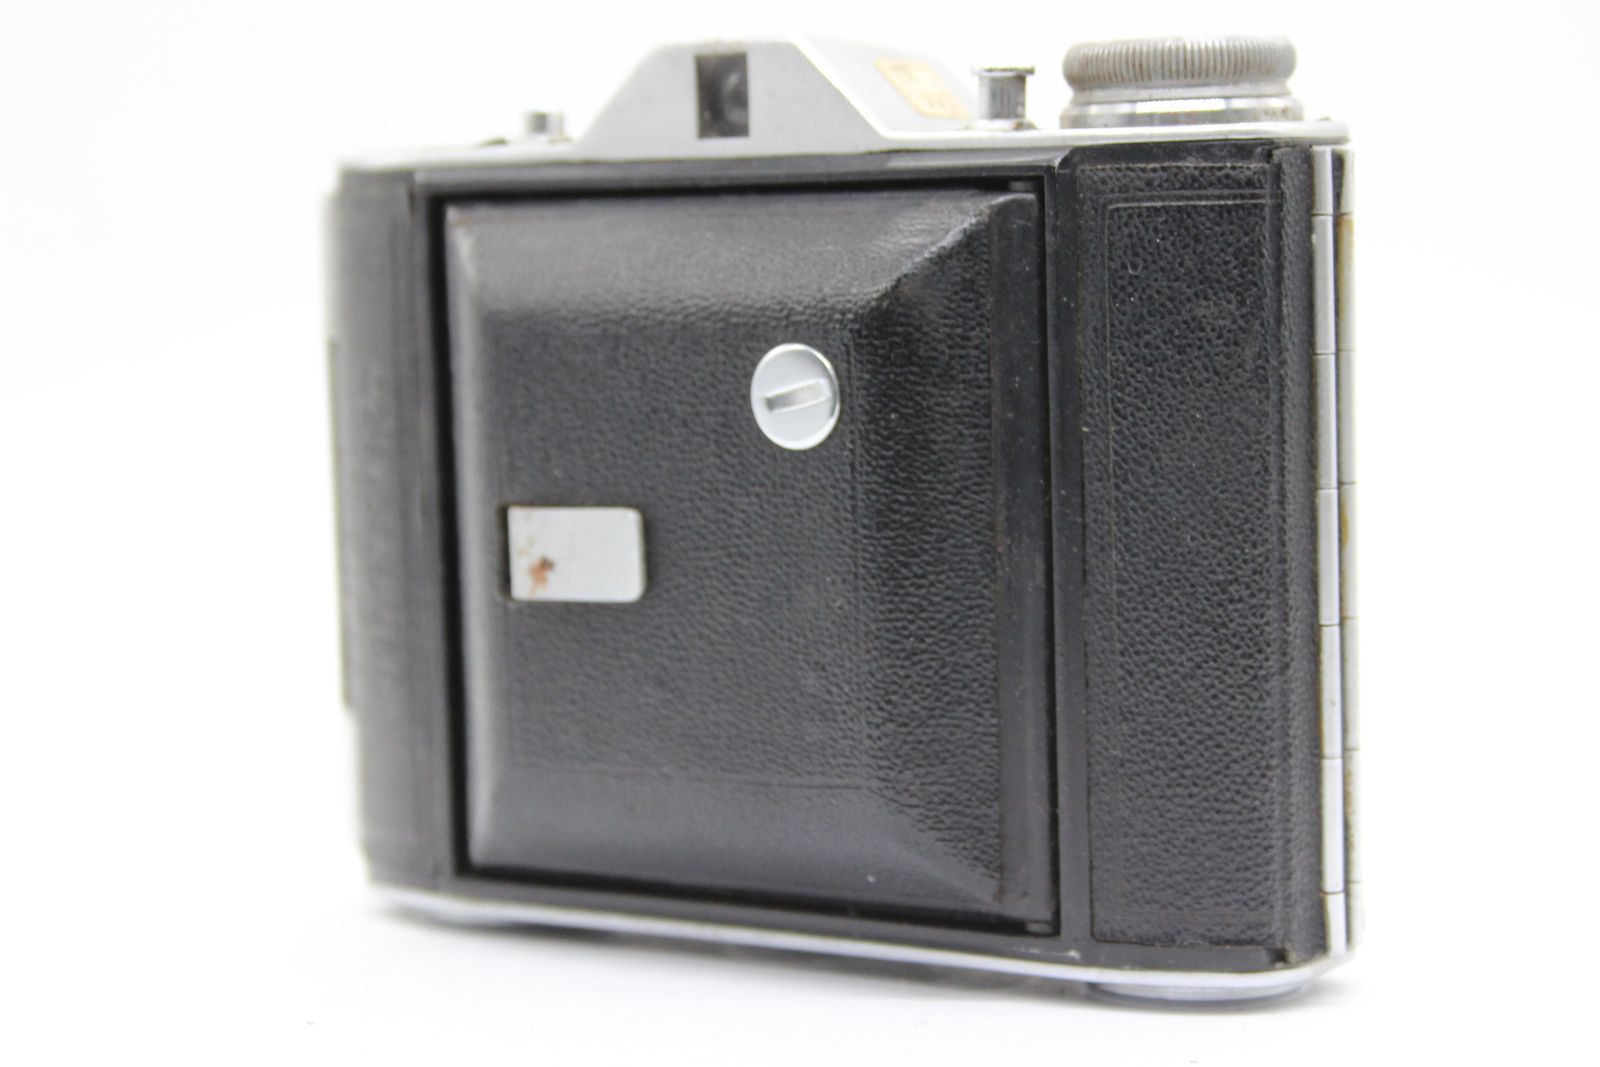 返品保証】 Ensign Selfix 16 20 Rosstar 75mm F4.5 蛇腹カメラ s3464 - メルカリ